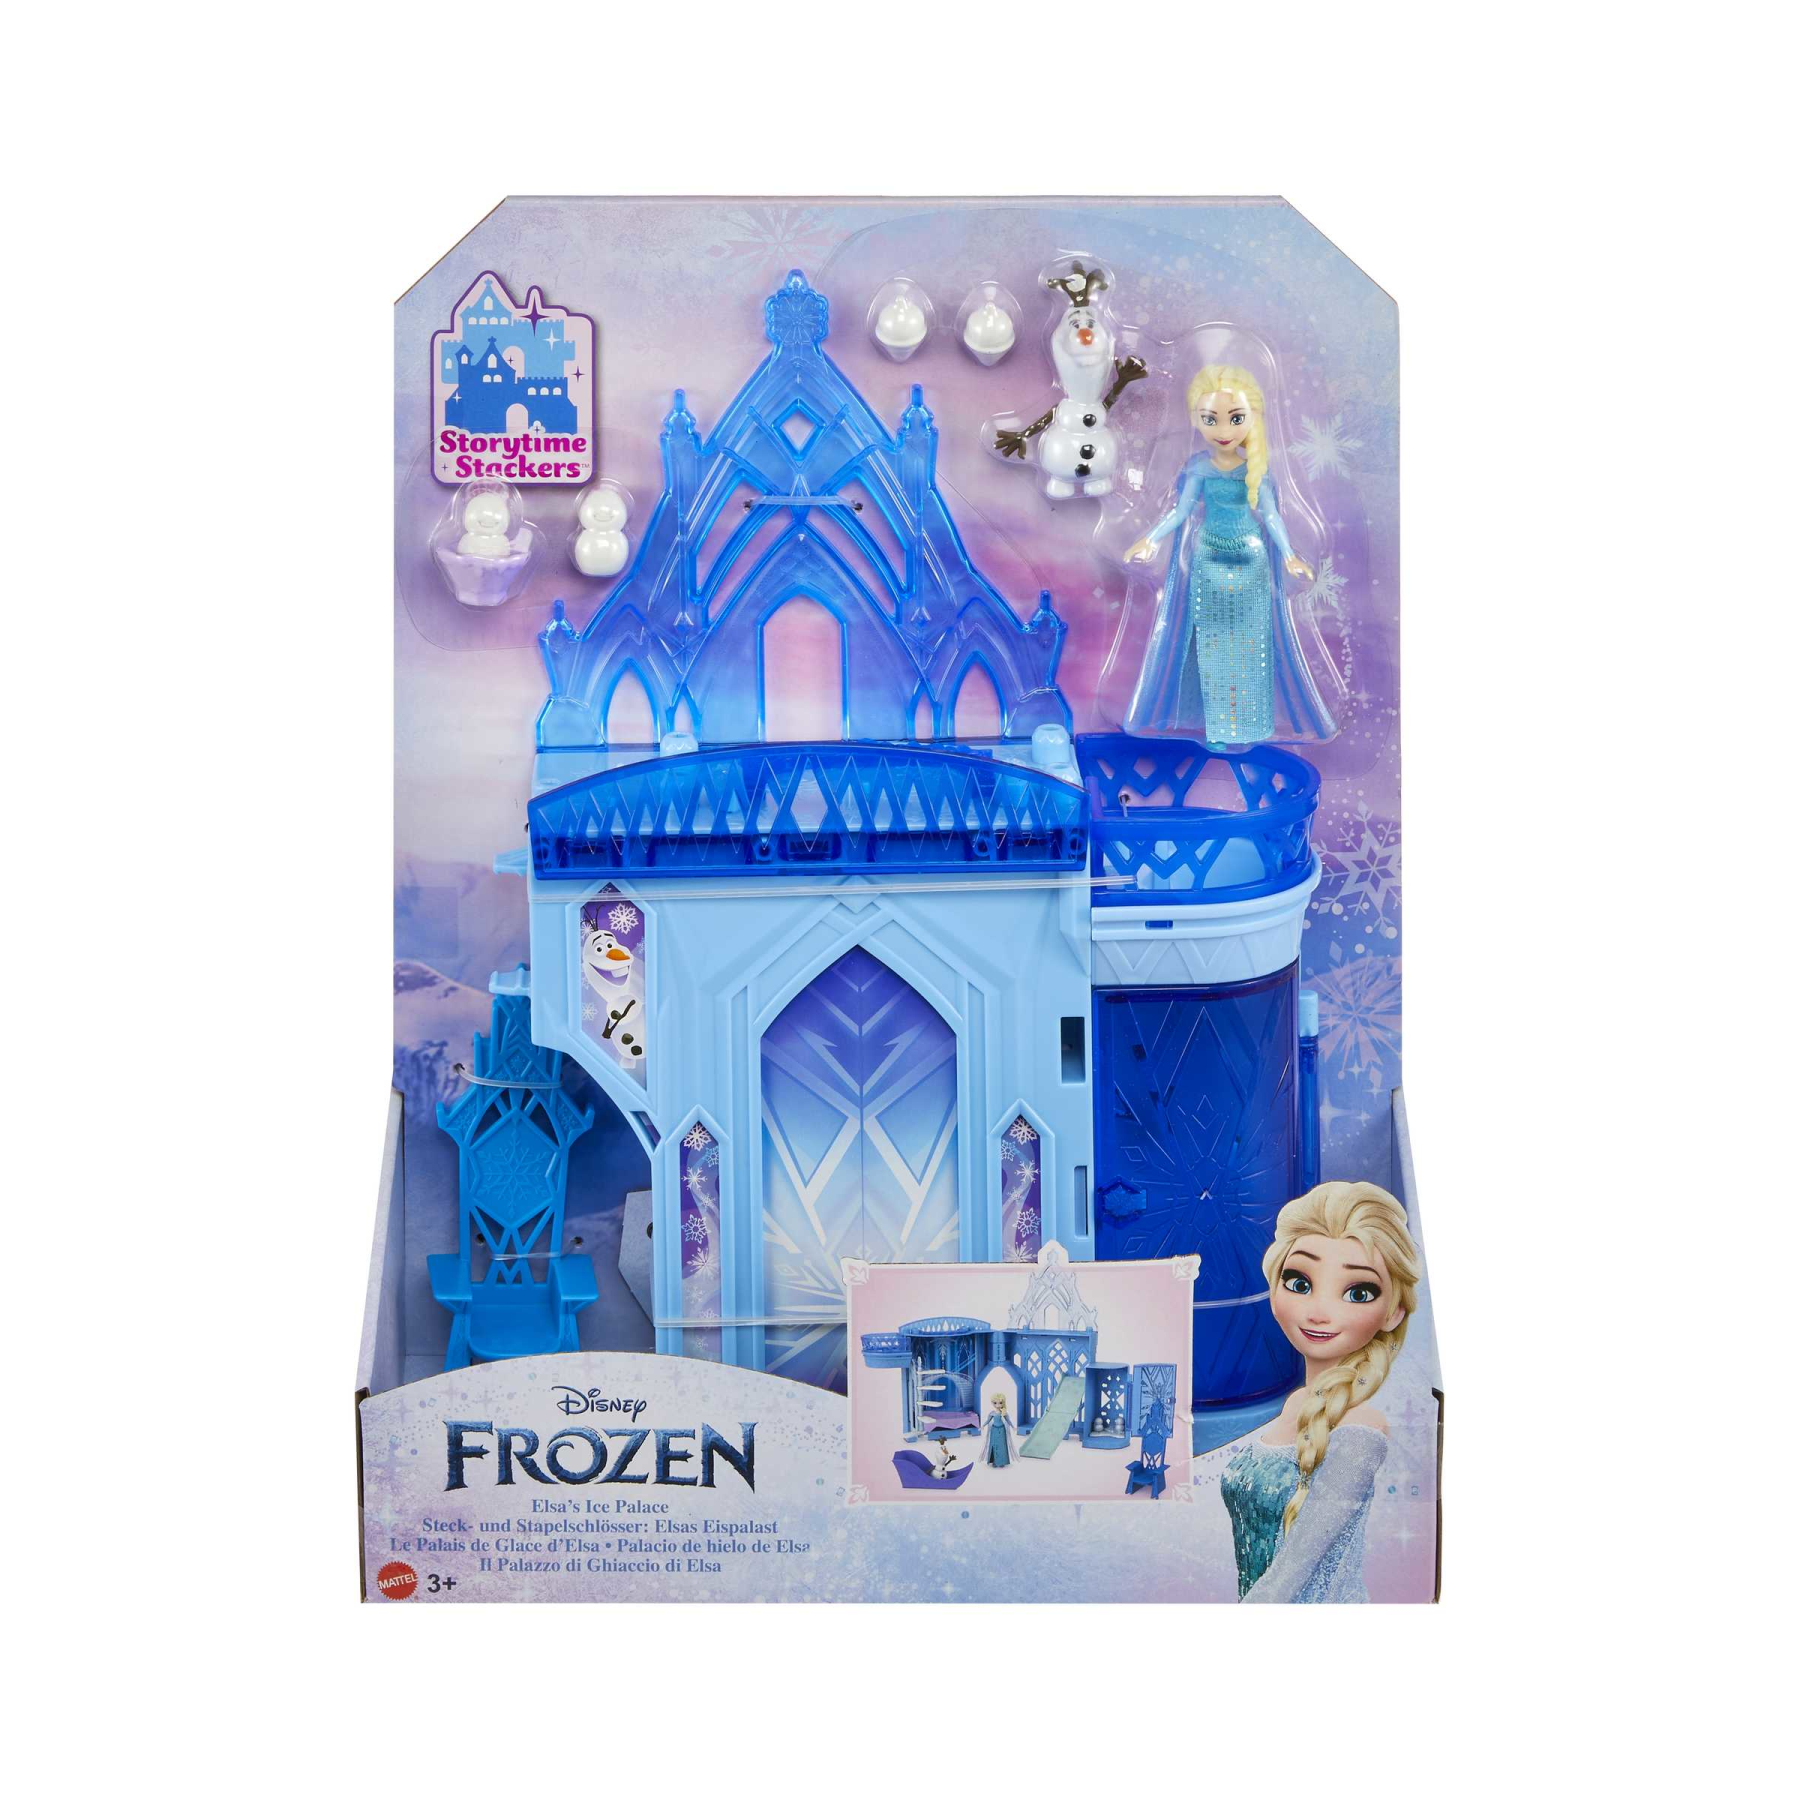 Disney frozen - set componibili palazzo di ghiaccio di elsa, playset  castello delle bambole impilabile, con mini bambola elsa, olaf e tanti  accessori, giocattolo per bambini, 3+ anni, hlx01 - Toys Center